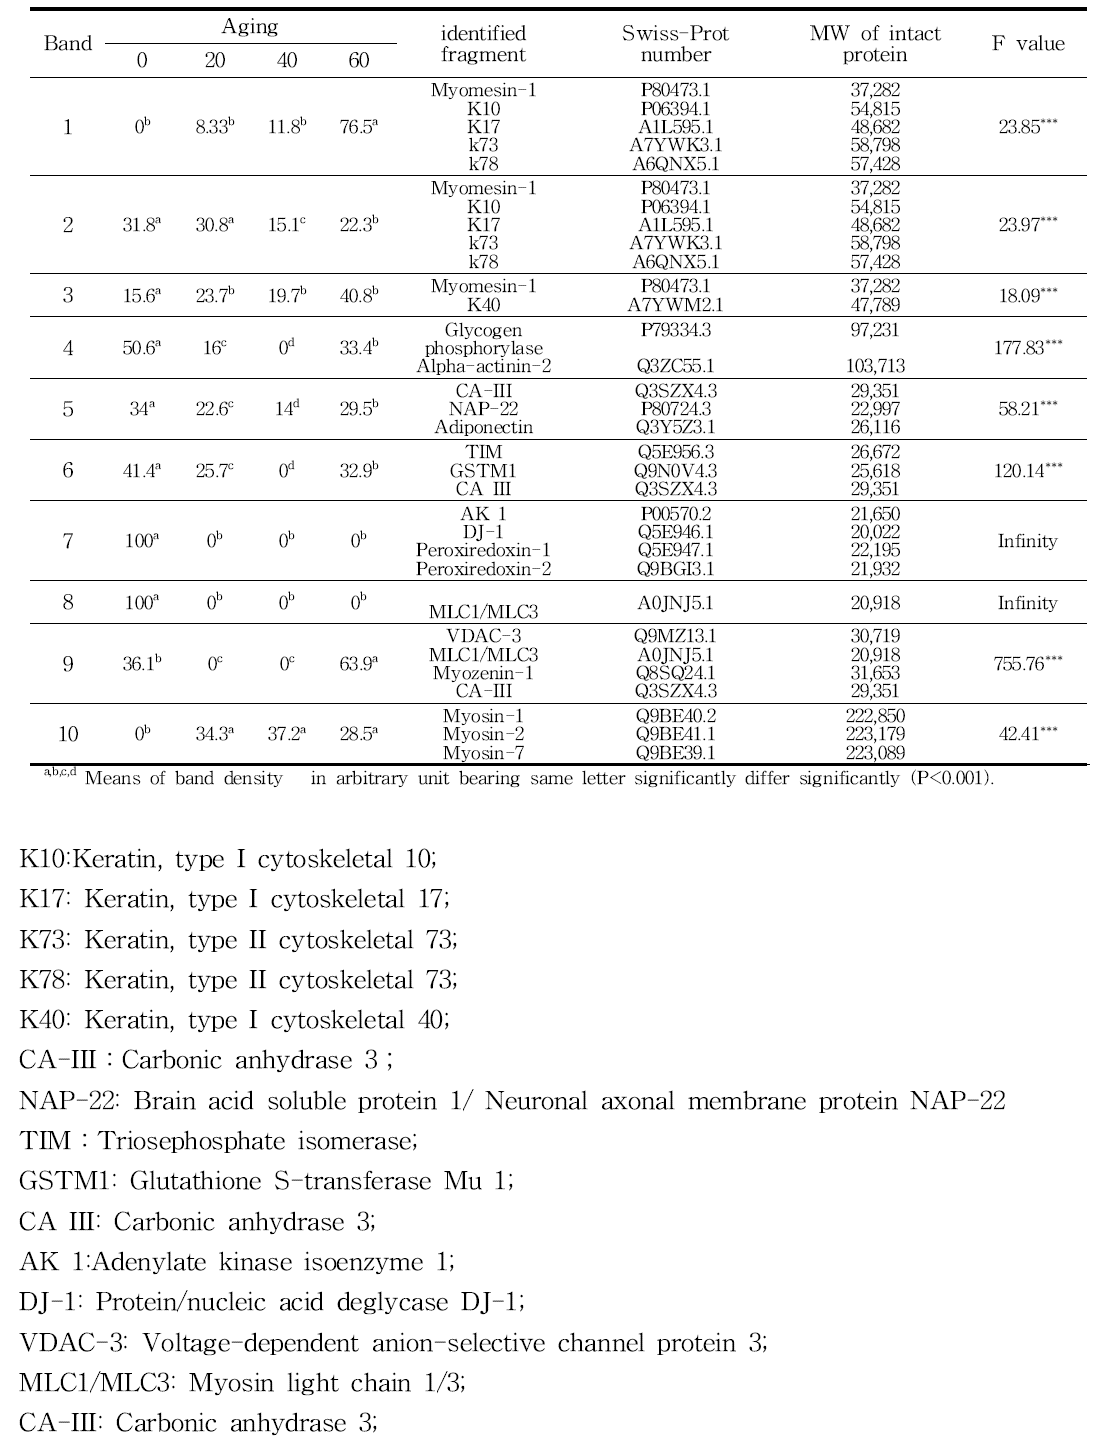 사진 4의 단백질 밴드에 대한 LC/MS/MS 동정표(숫자 1 – 10은 사진 3-4의 벤드번호임)